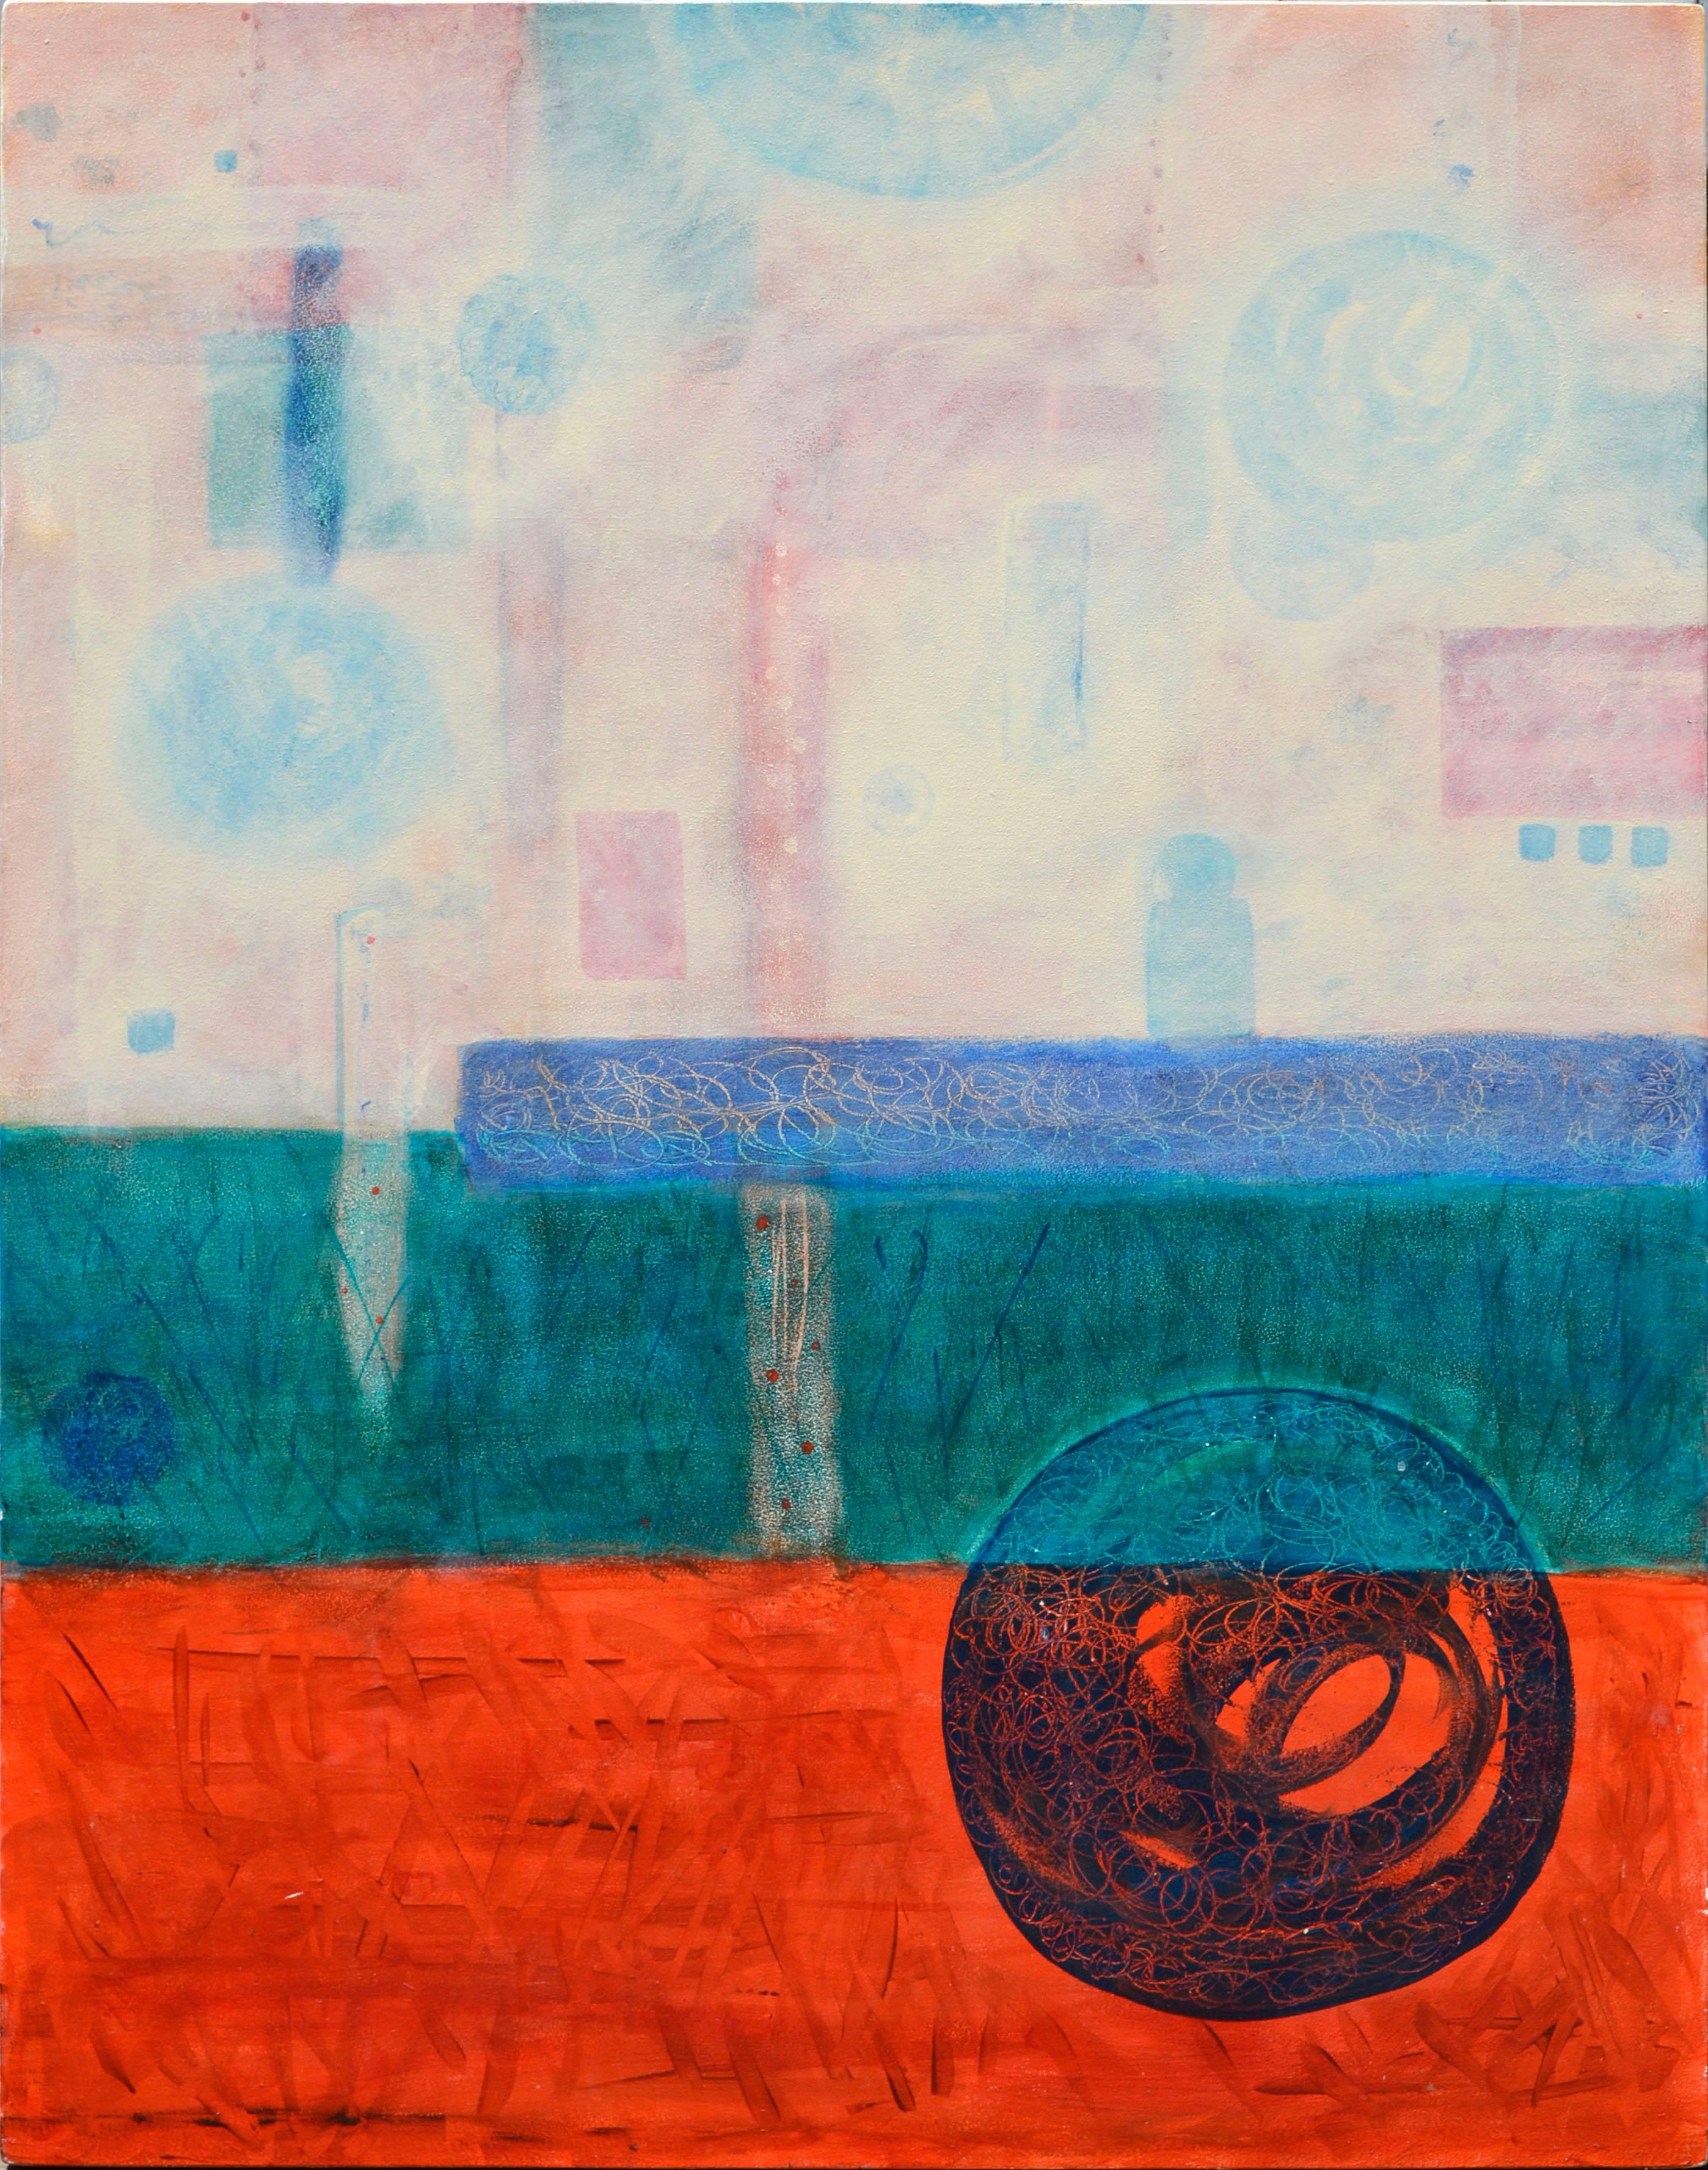 Abstract Painting Julie Fudge - Origines spirituelles - Abstract géométrique 